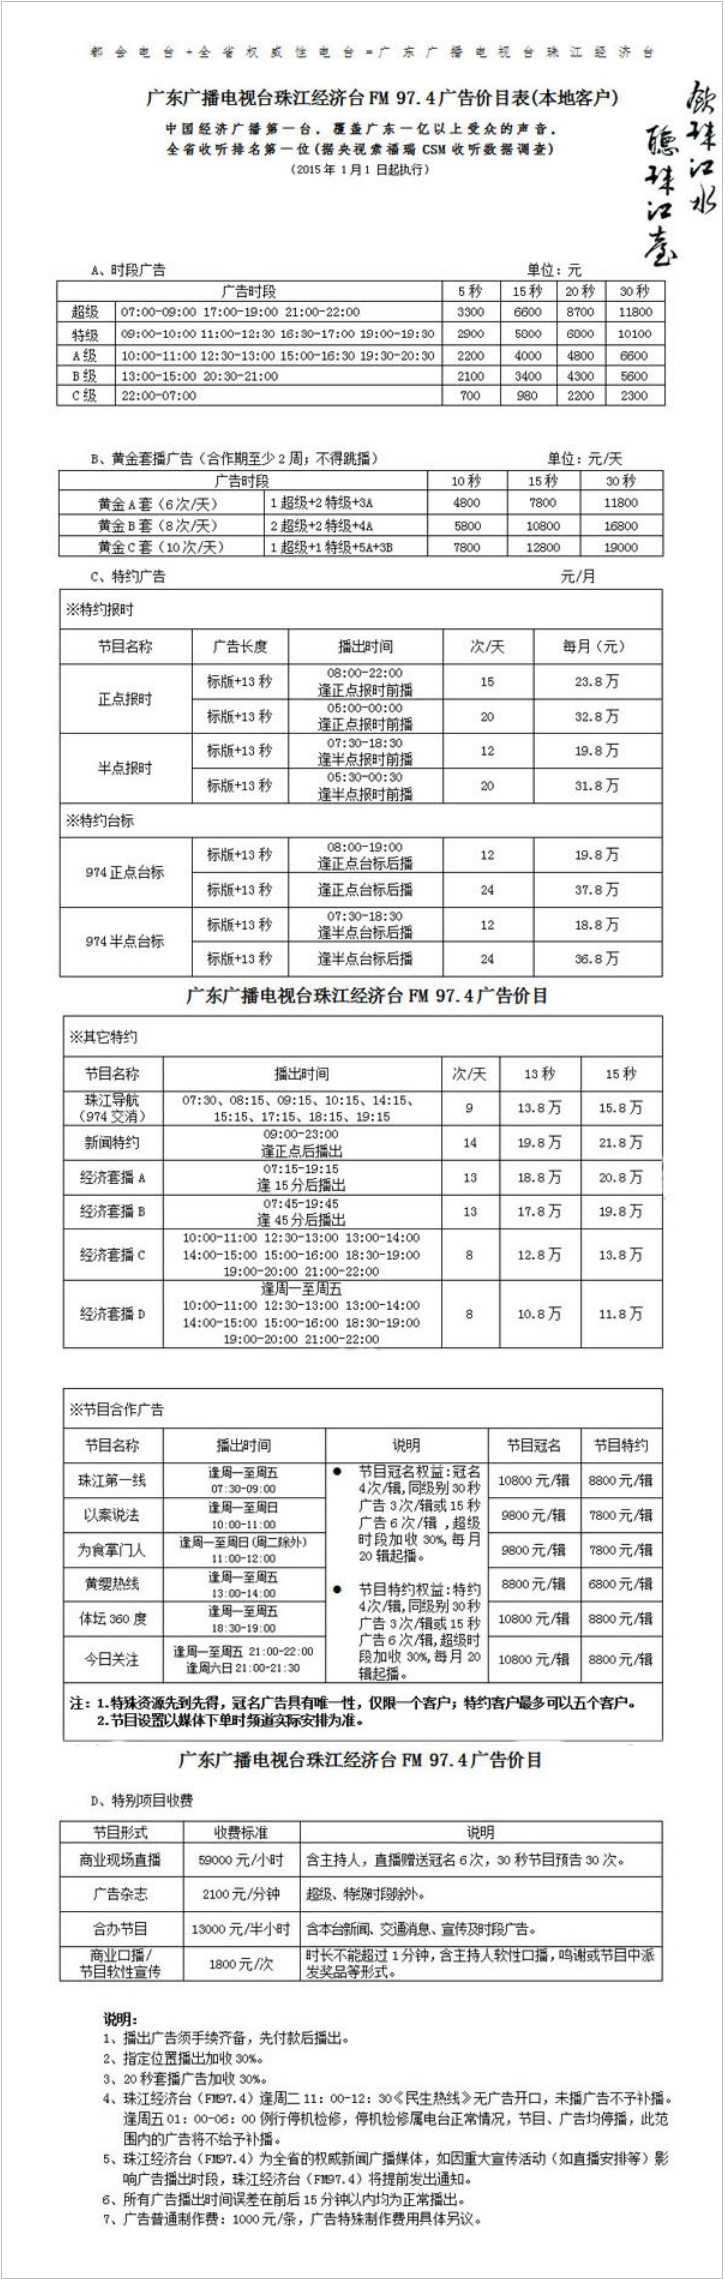 2015广东人民广播电台珠江经济广播 FM97.4广告报价表.png